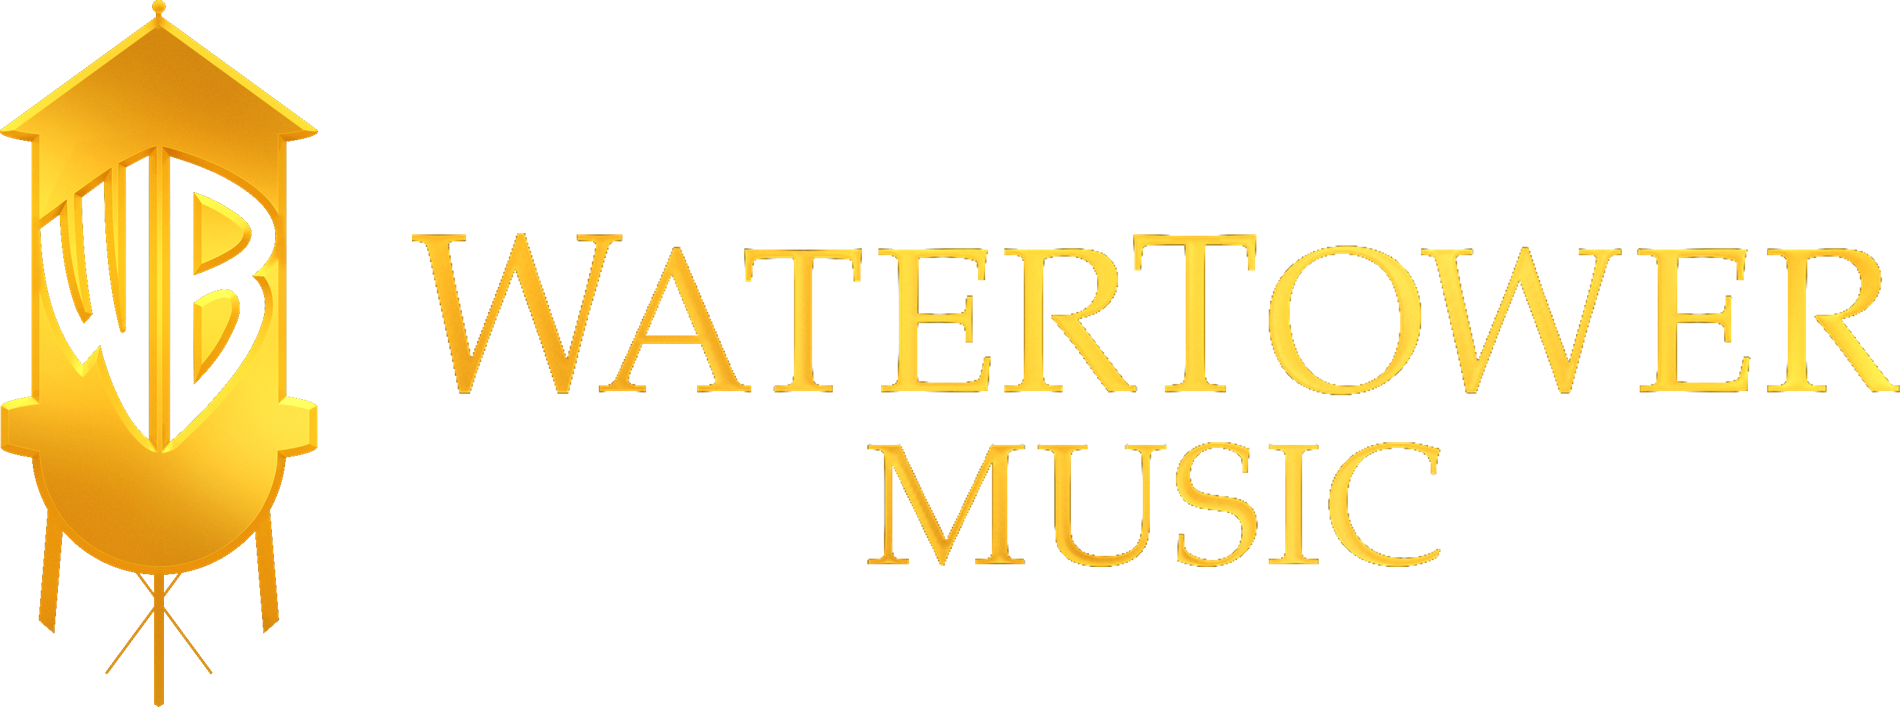 Watertower Music Logo (1900x707), Png Download